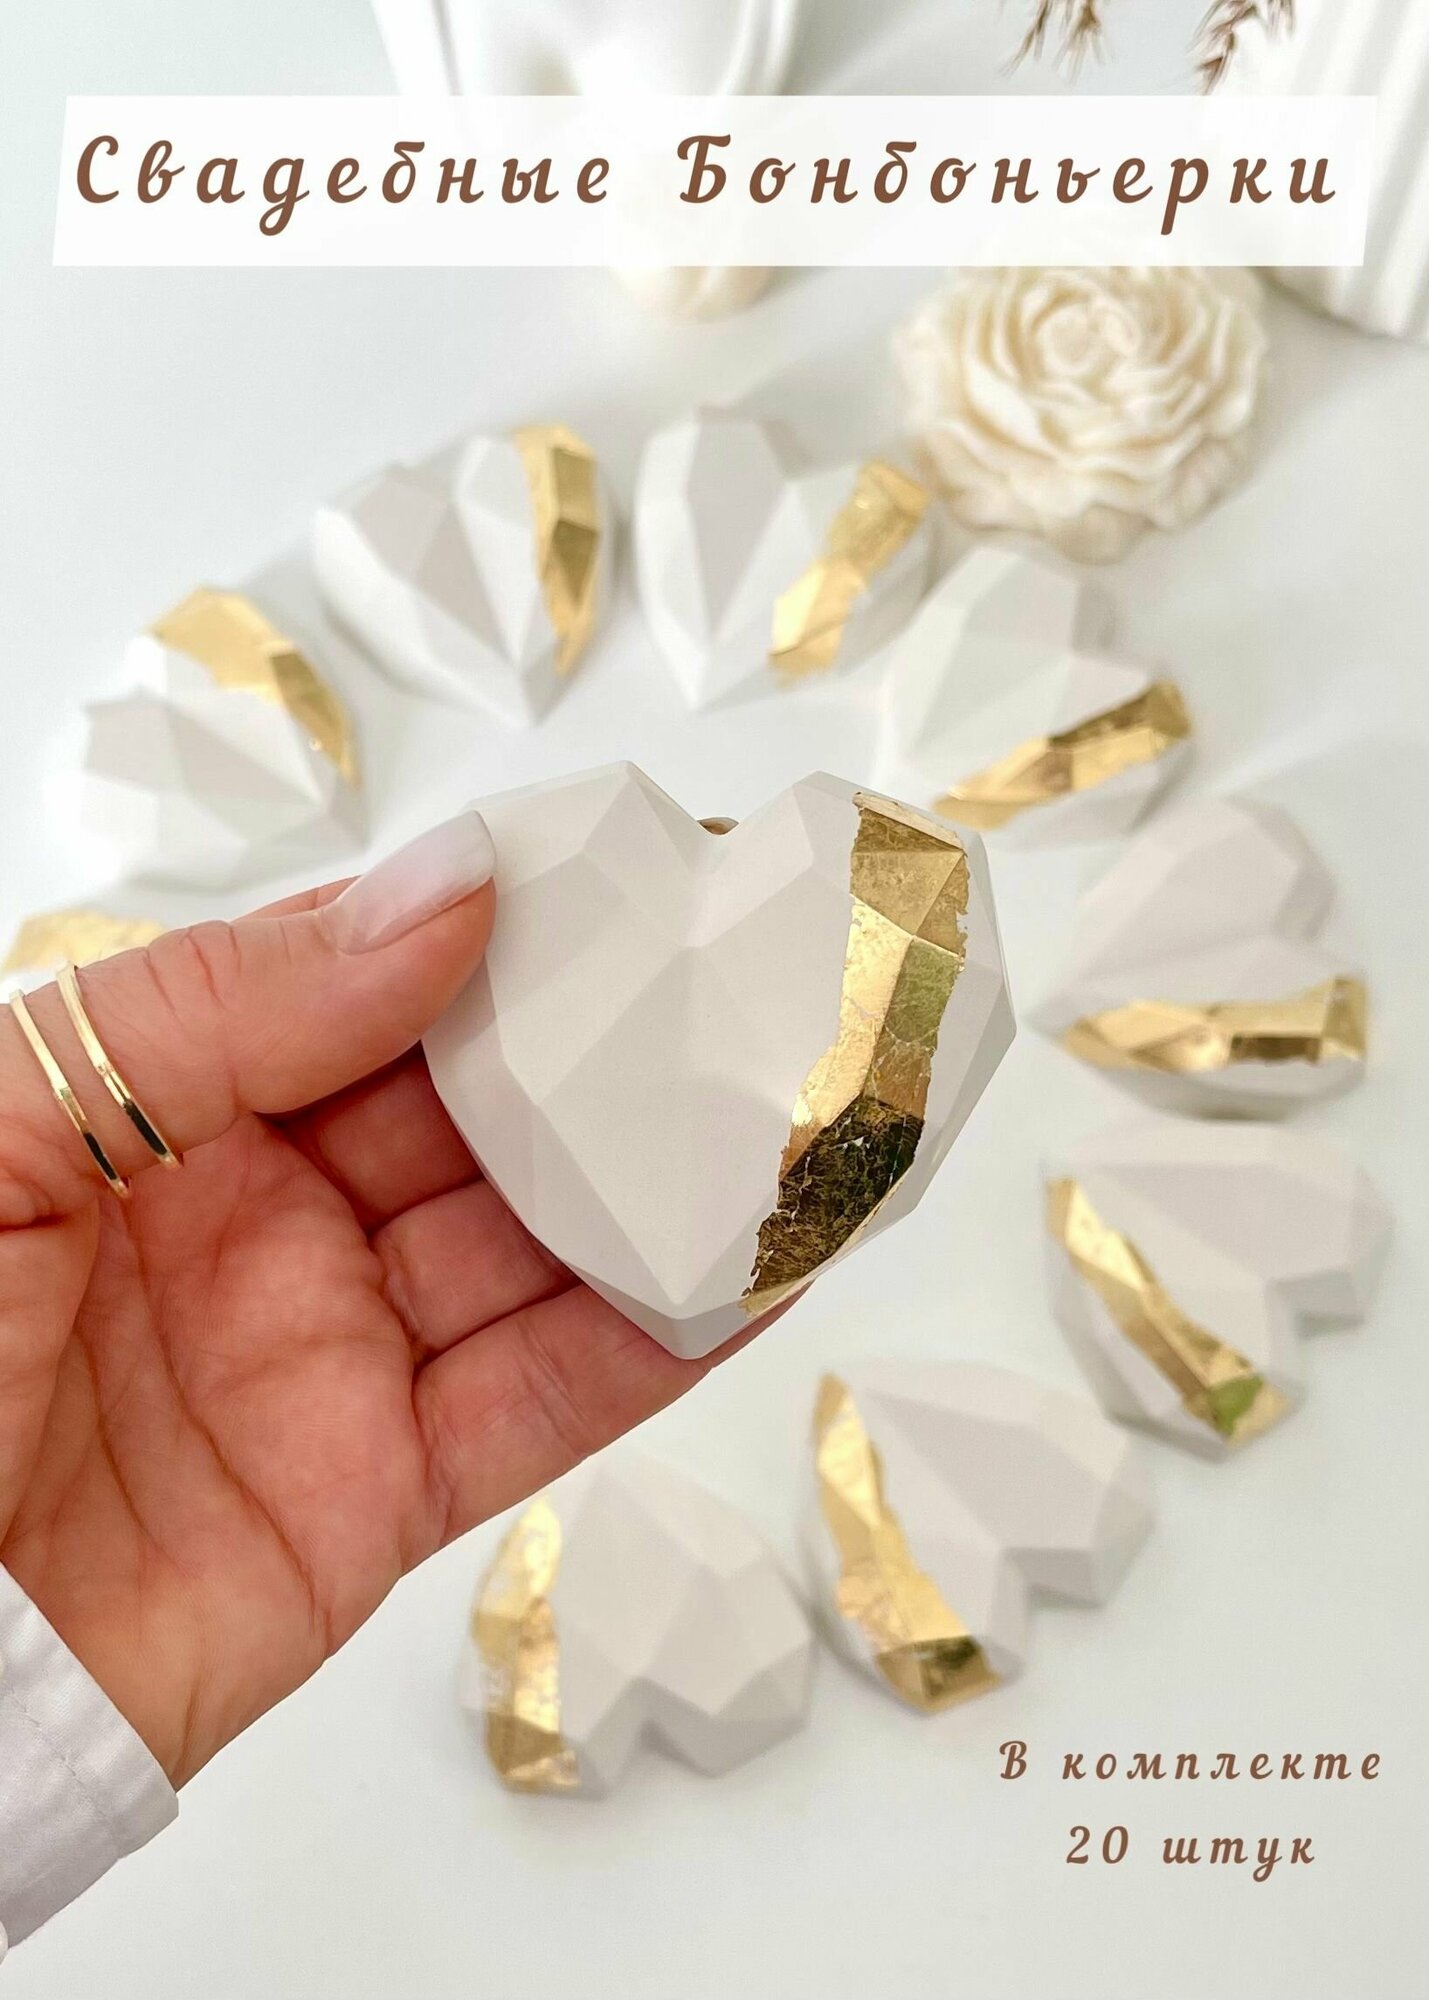 Свадебные подарки комплименты для гостей / Свадебные бонбоньерки белые с золотым 20 штук